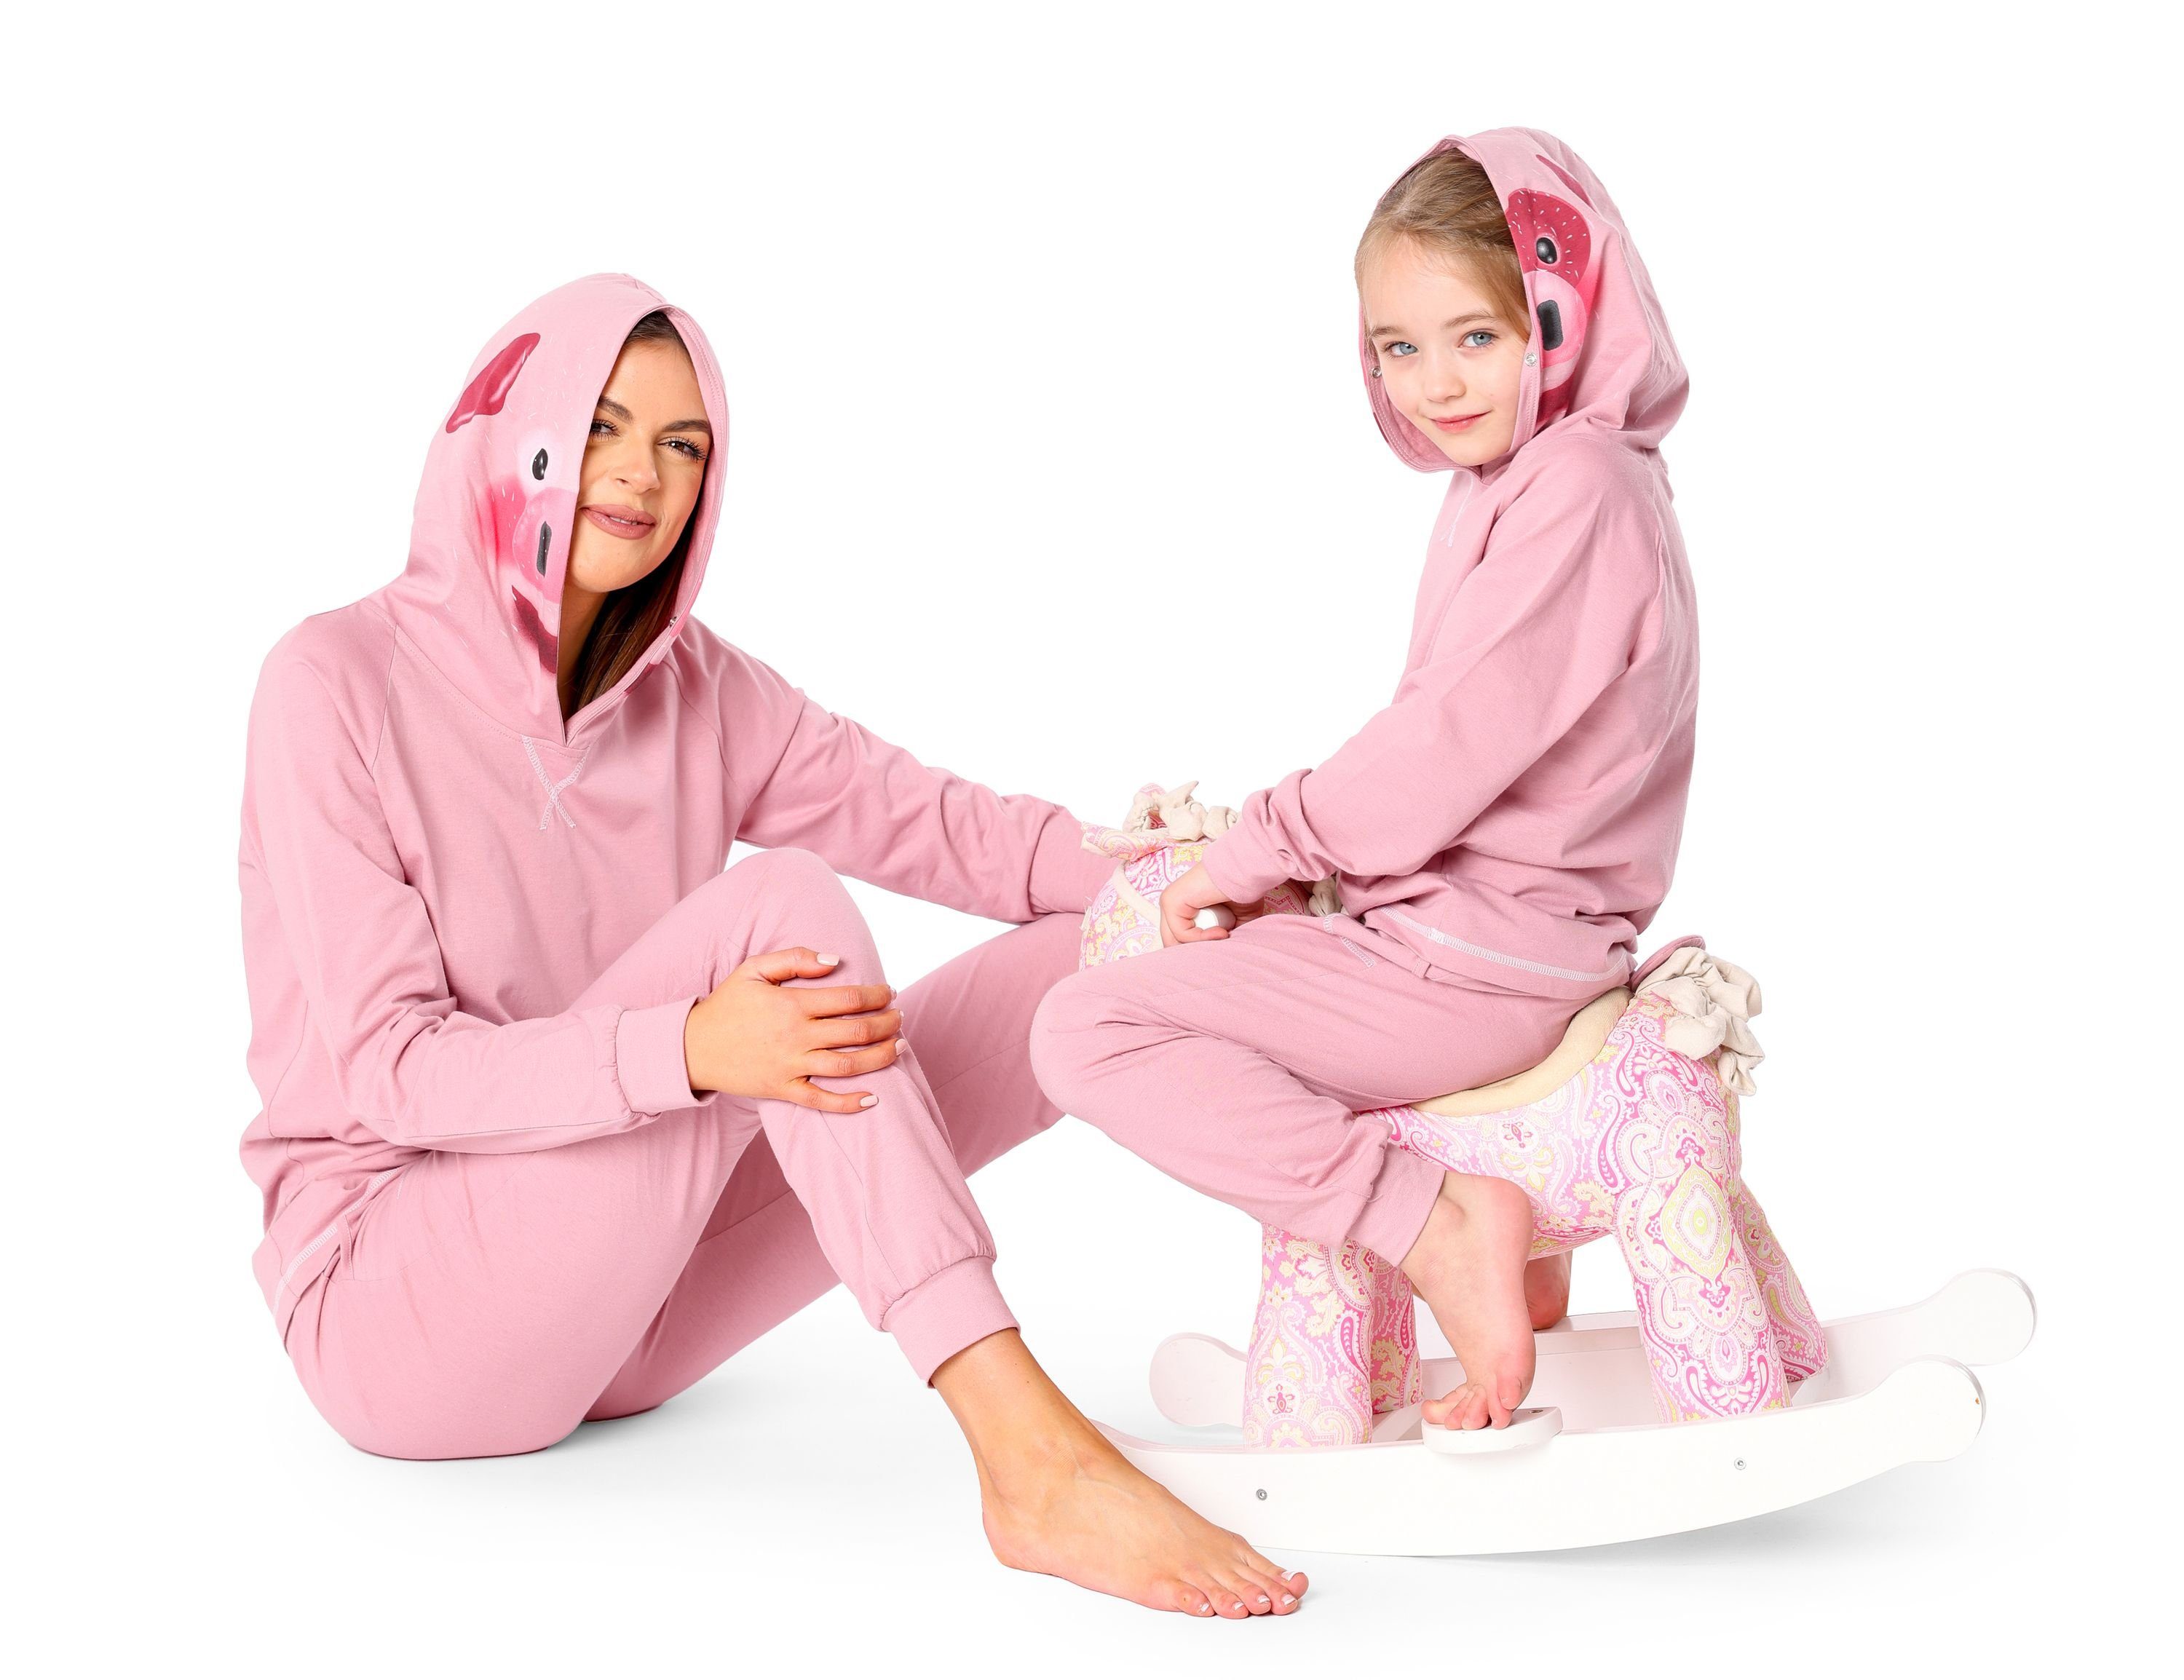 Schlafanzug Ladeheid Schlafanzug Schweinchen aus LA40-236 mit Verkleidung ohne Kapuze Rosa Baumwolle Kinder